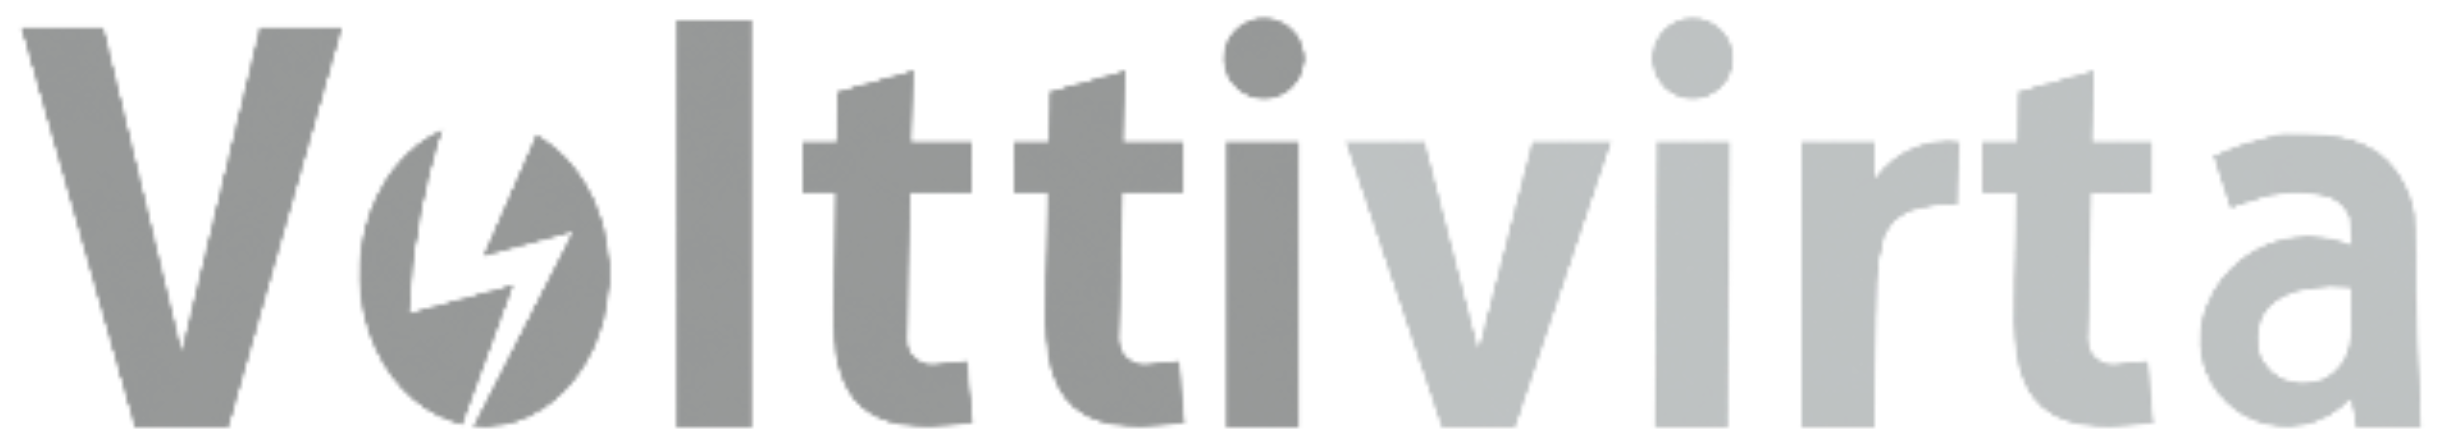 Volttivirta logo